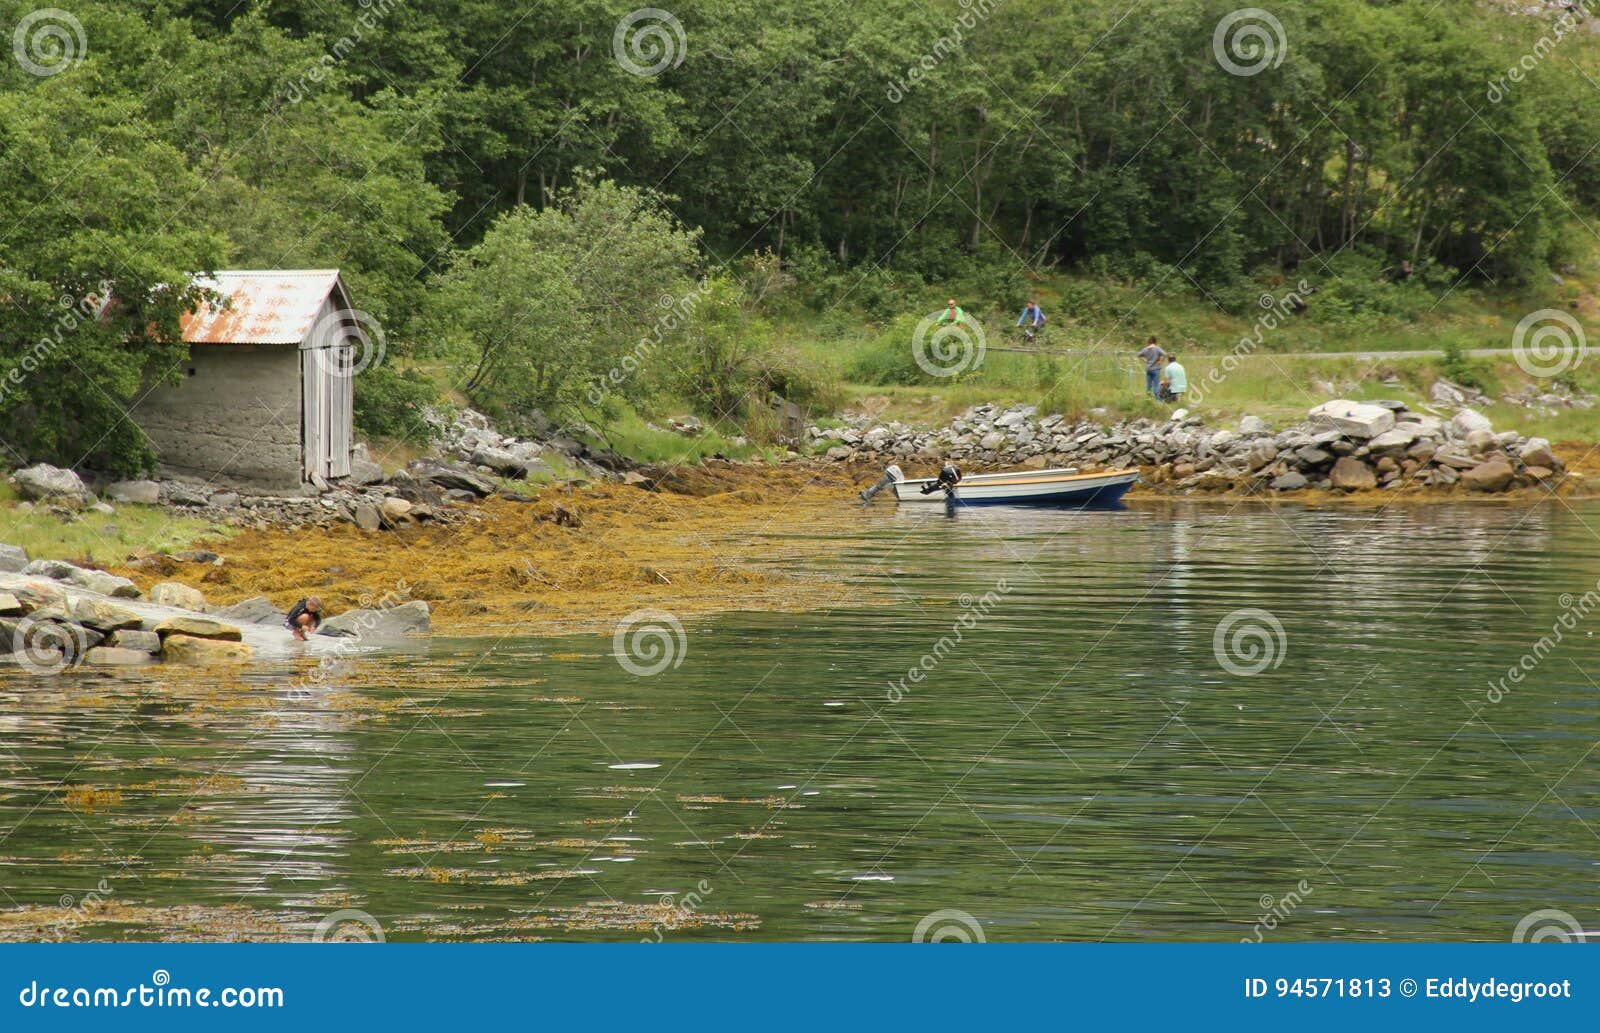 Σπίτι βαρκών. Ένα ξύλινο σπίτι βαρκών στην άκρη νερών του φιορδ Geiranger στη Νορβηγία